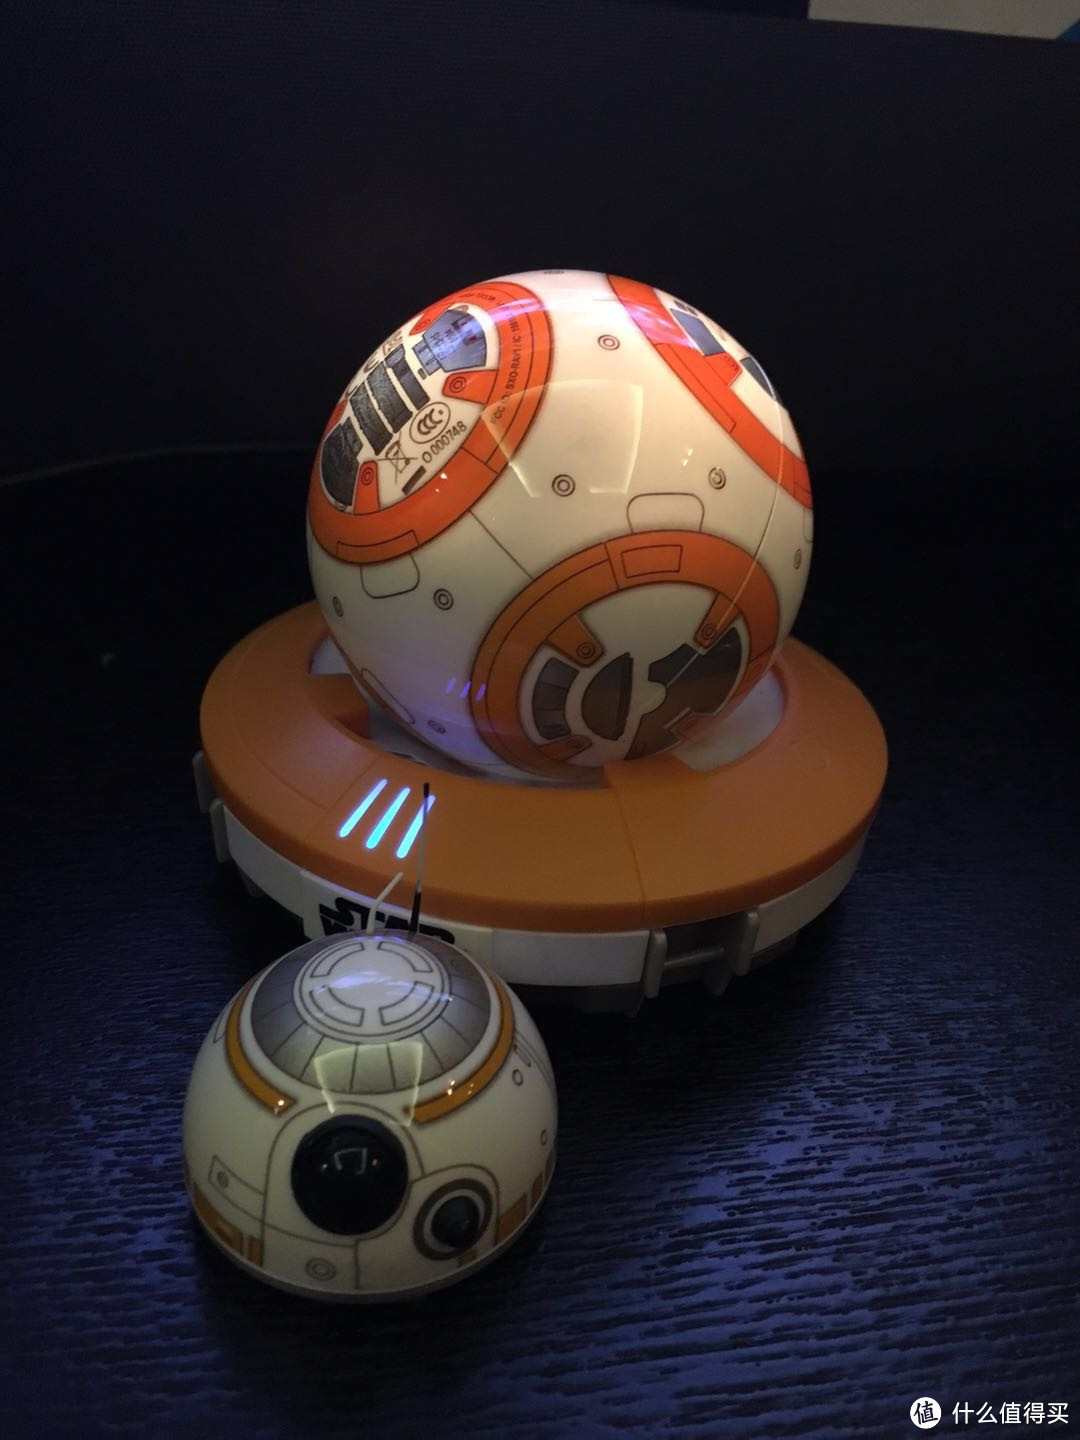 你值得拥有！星球大战 Sphero BB-8 球型机器人开箱晒单！